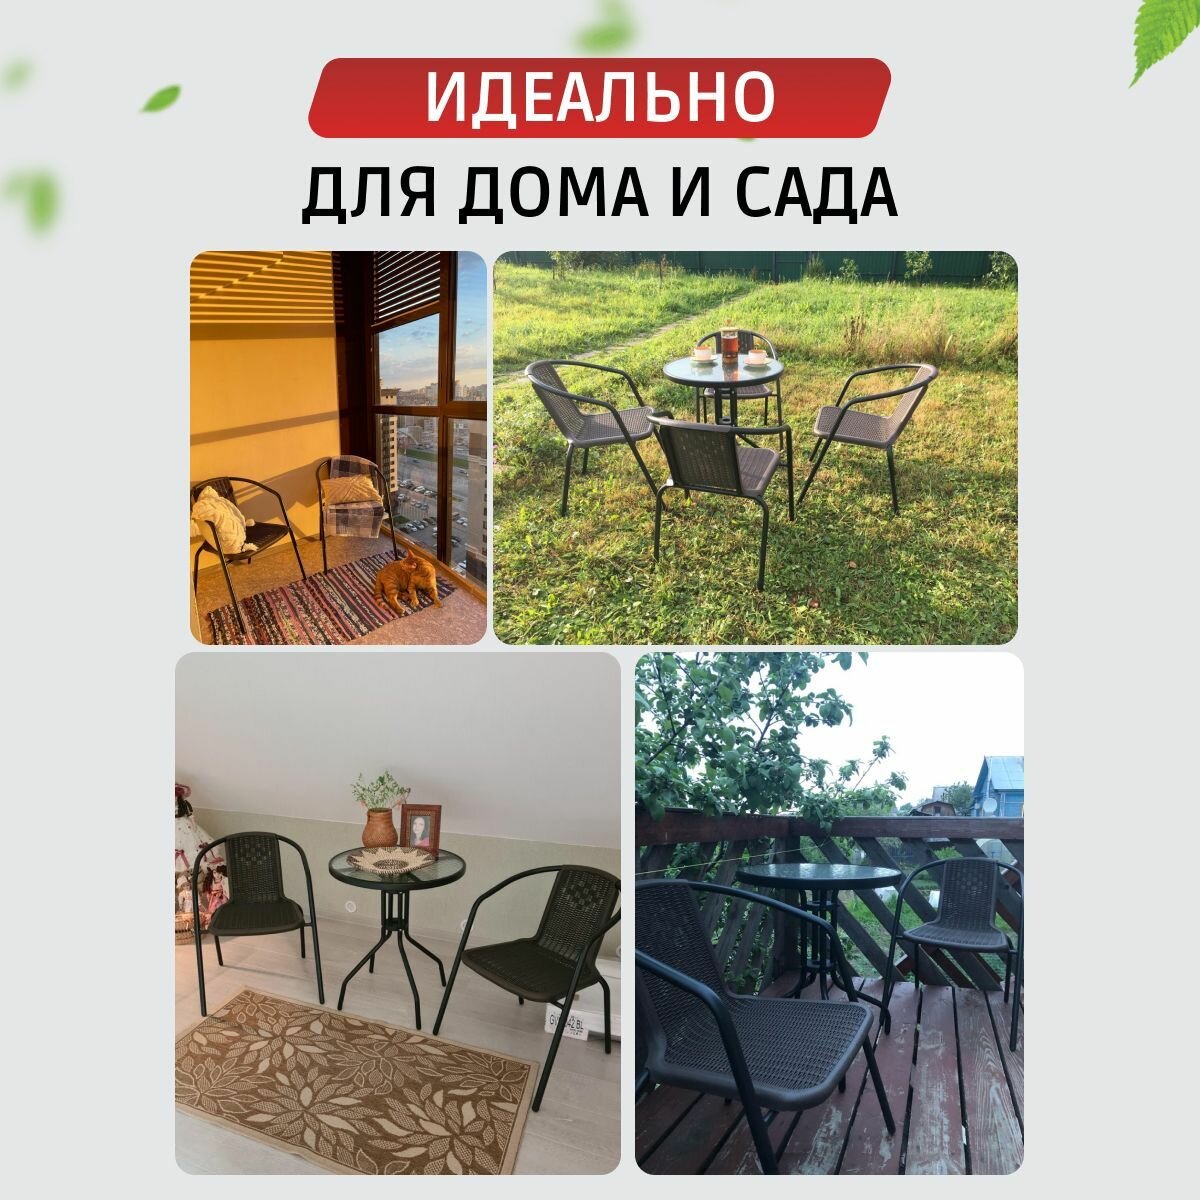 Кресла садовые Vita 2 шт, стул садовый, для дома, для дачи и сада, металл, пластик, Ами мебель